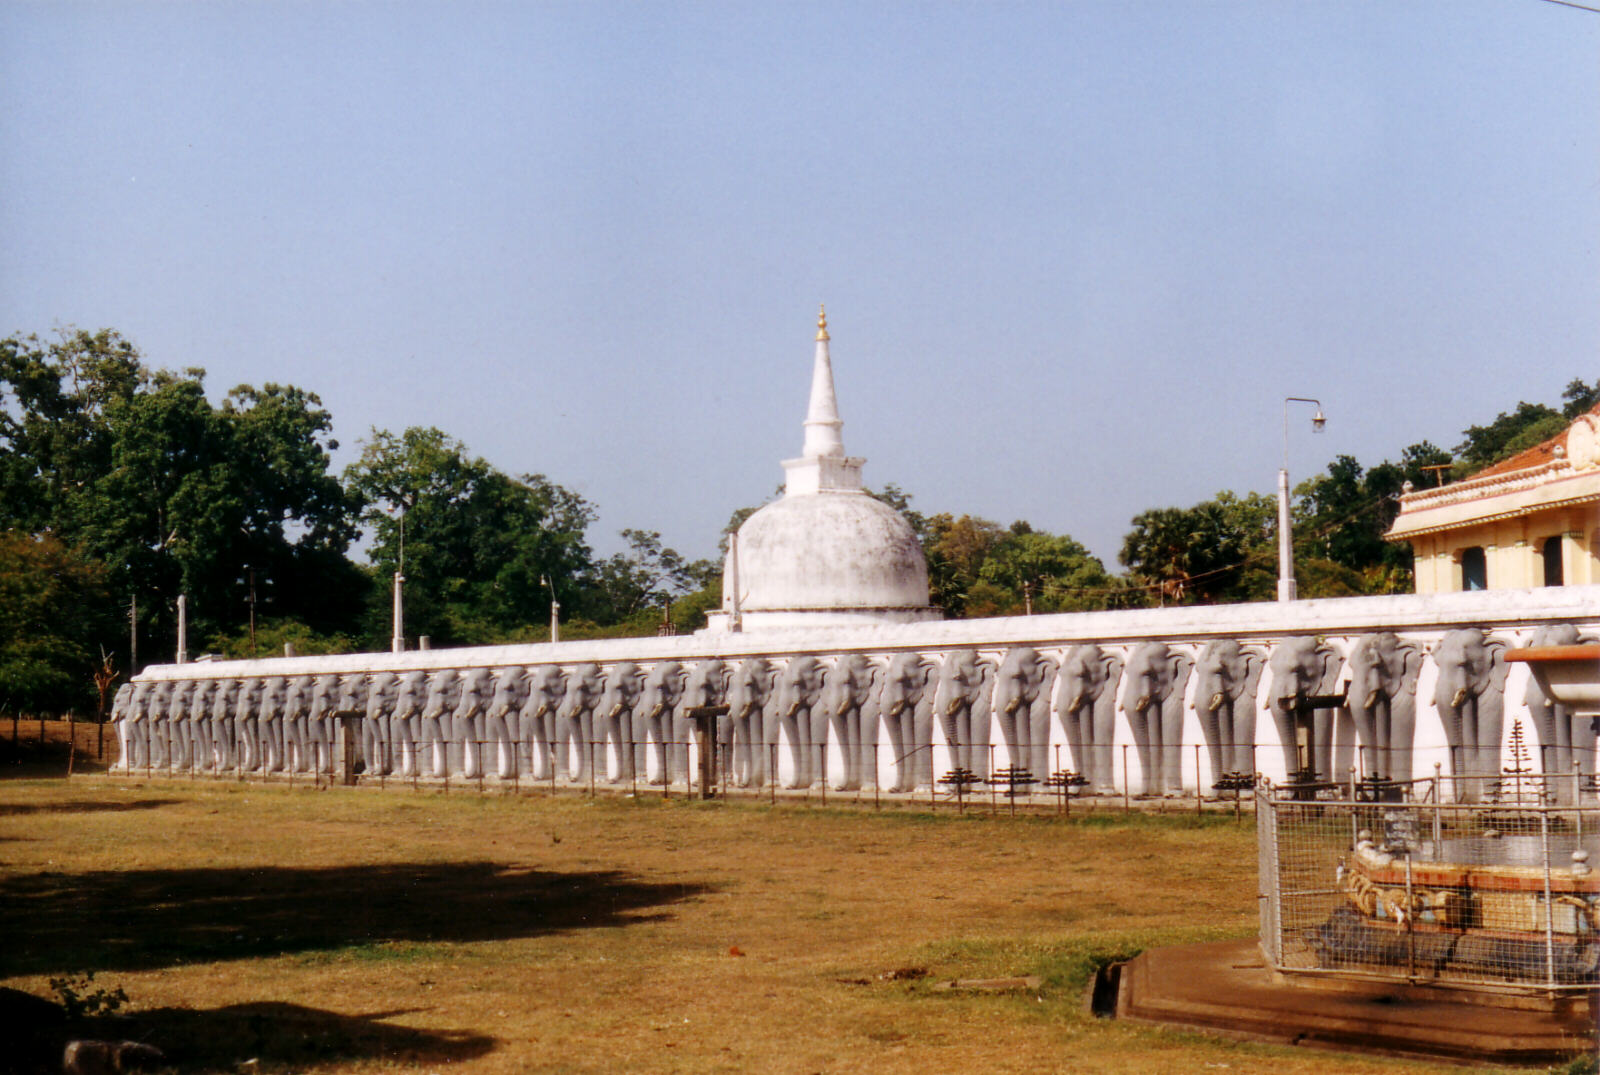 Ruvanvelisaya Dagoba at Anuradhapura, Sri Lanka